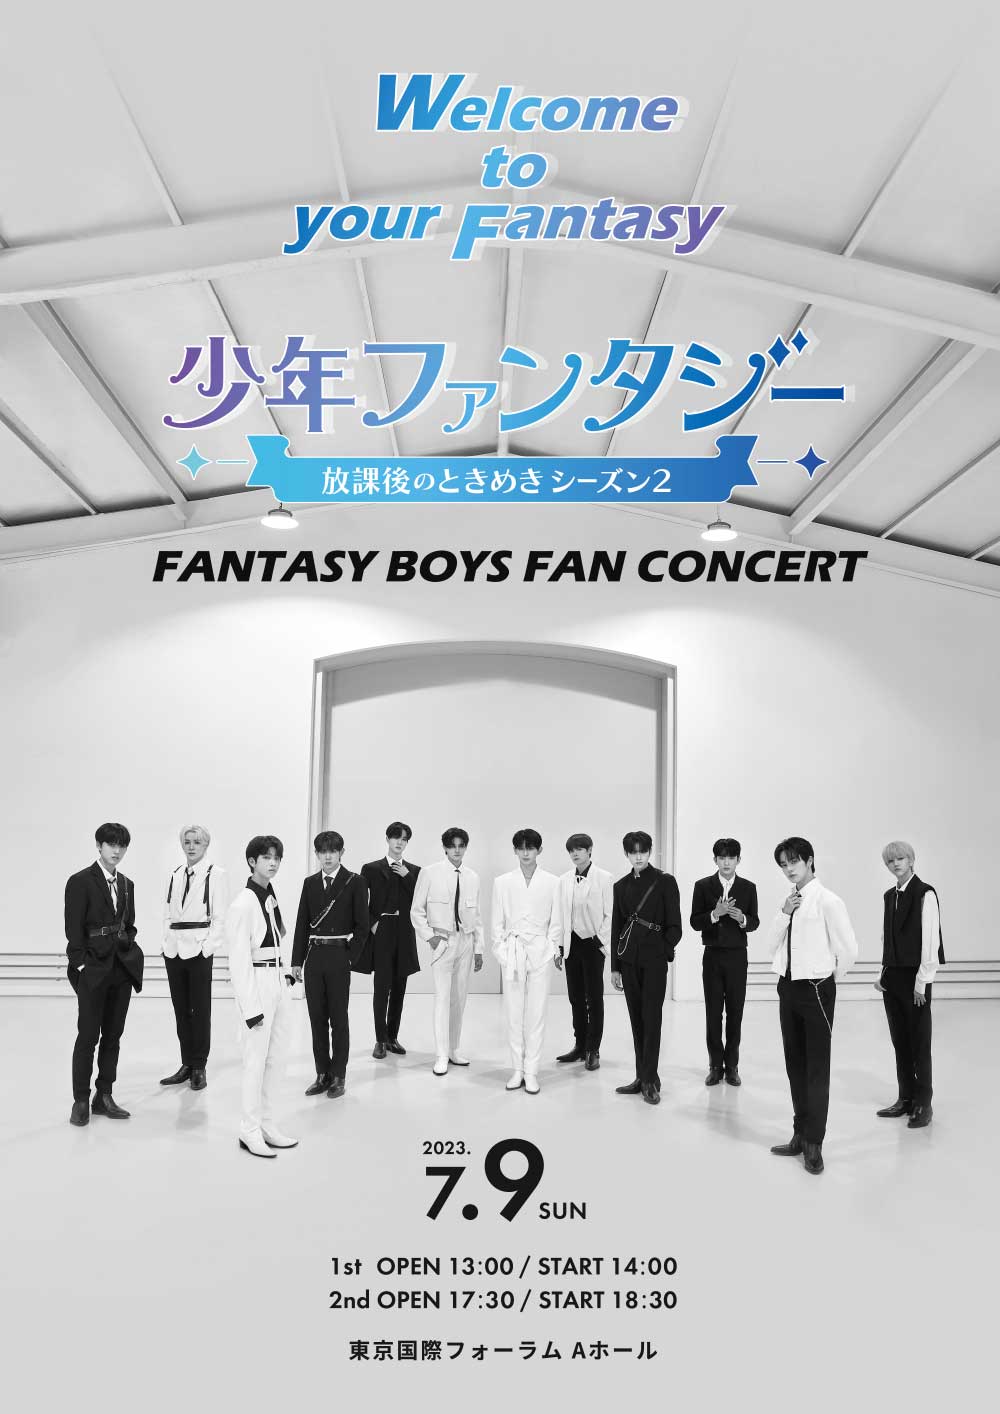 少年ファンタジー」12名による単独ファンコンサートが東京で開催決定！ PODA